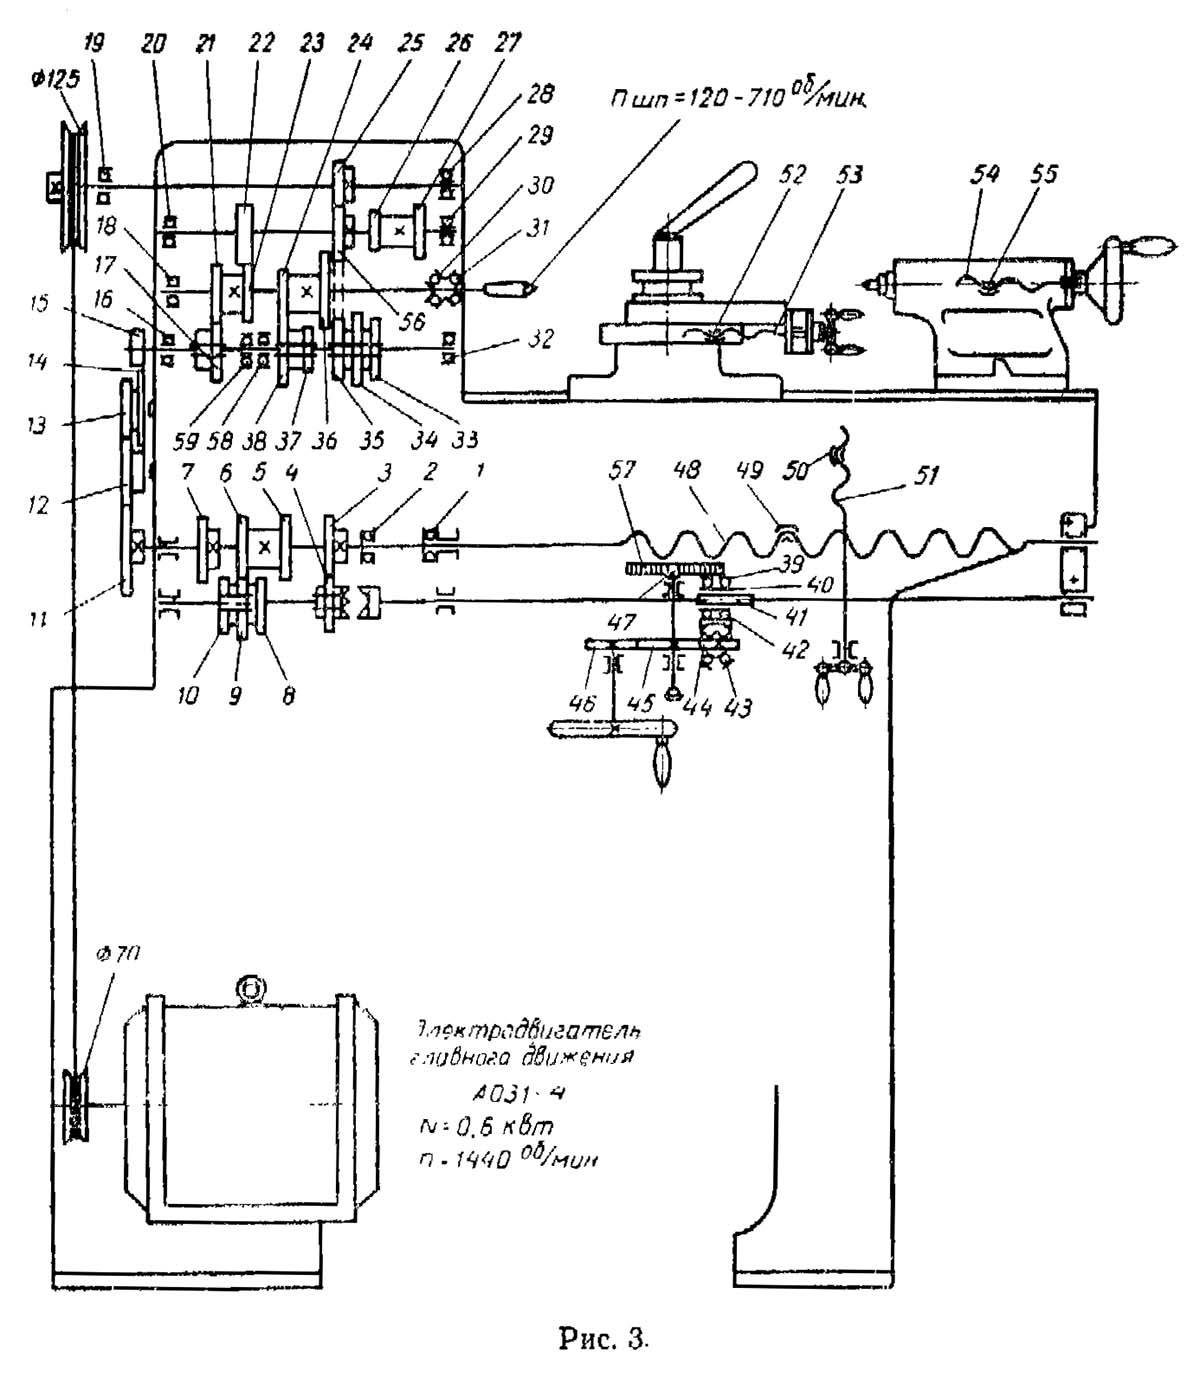 Описание технических характеристик токарного станка тв-4, особенности его эксплуатации